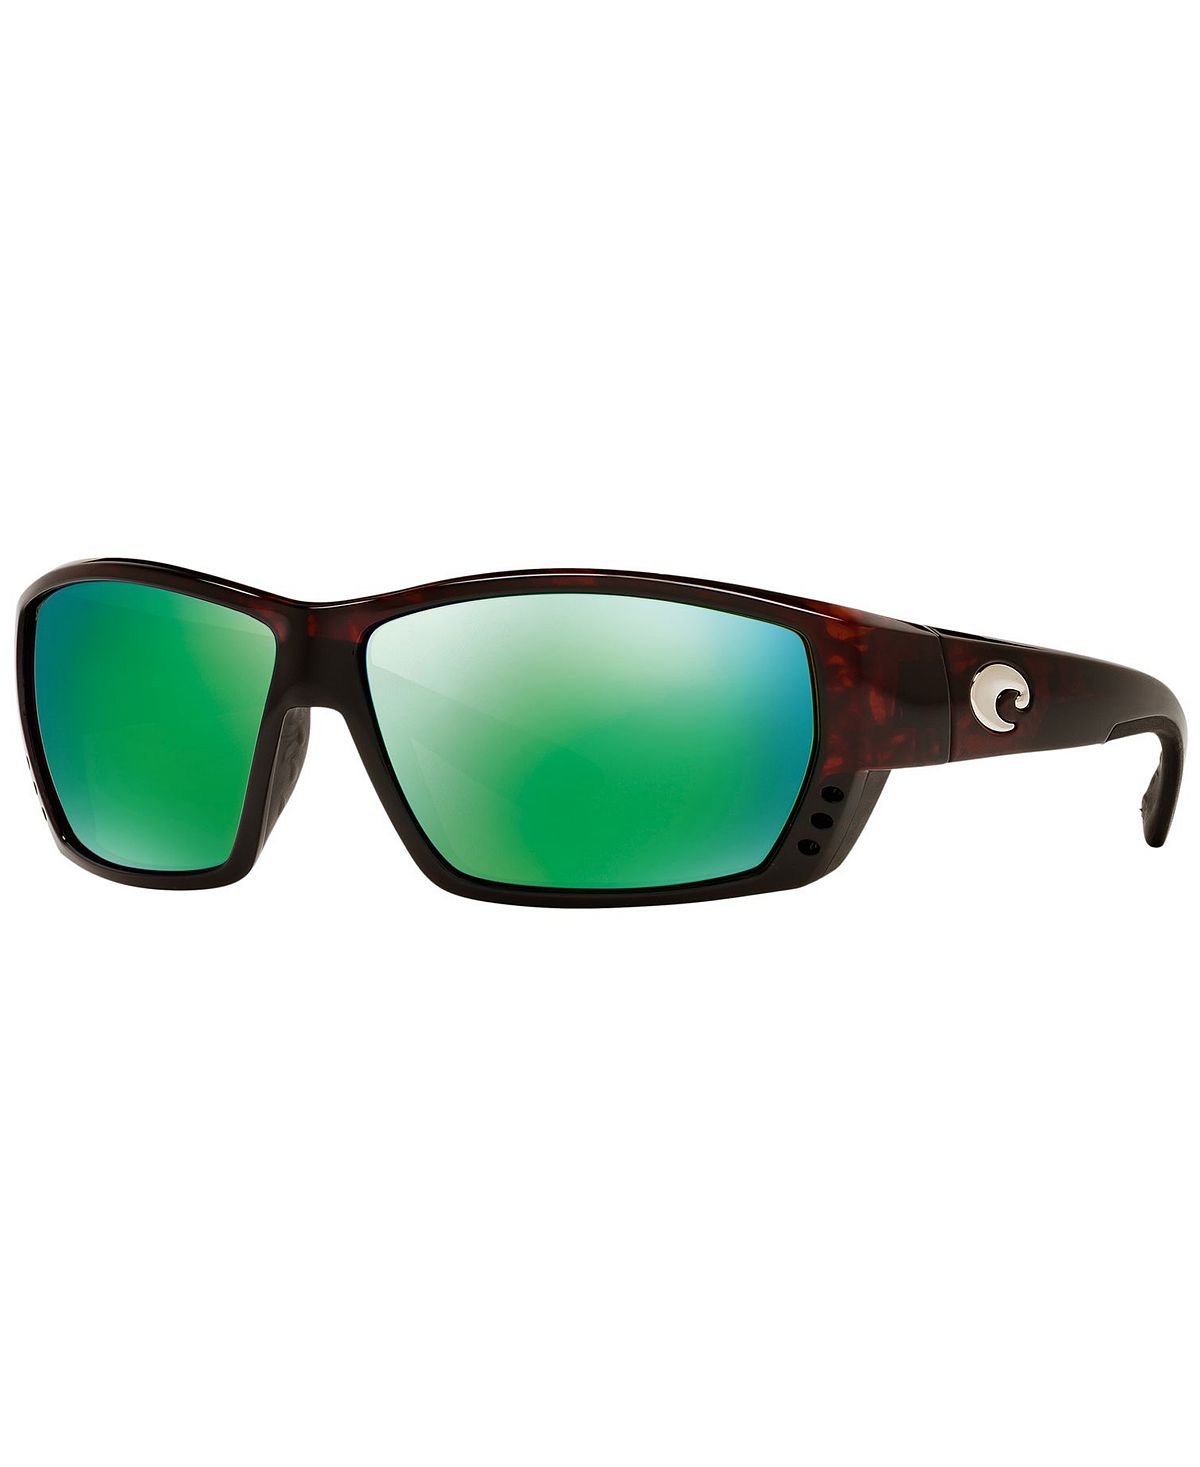 Поляризованные солнцезащитные очки, TUNA ALLEY Costa Del Mar munchen 9 5x20 5x112 d76 et35 gun metallic mirror face